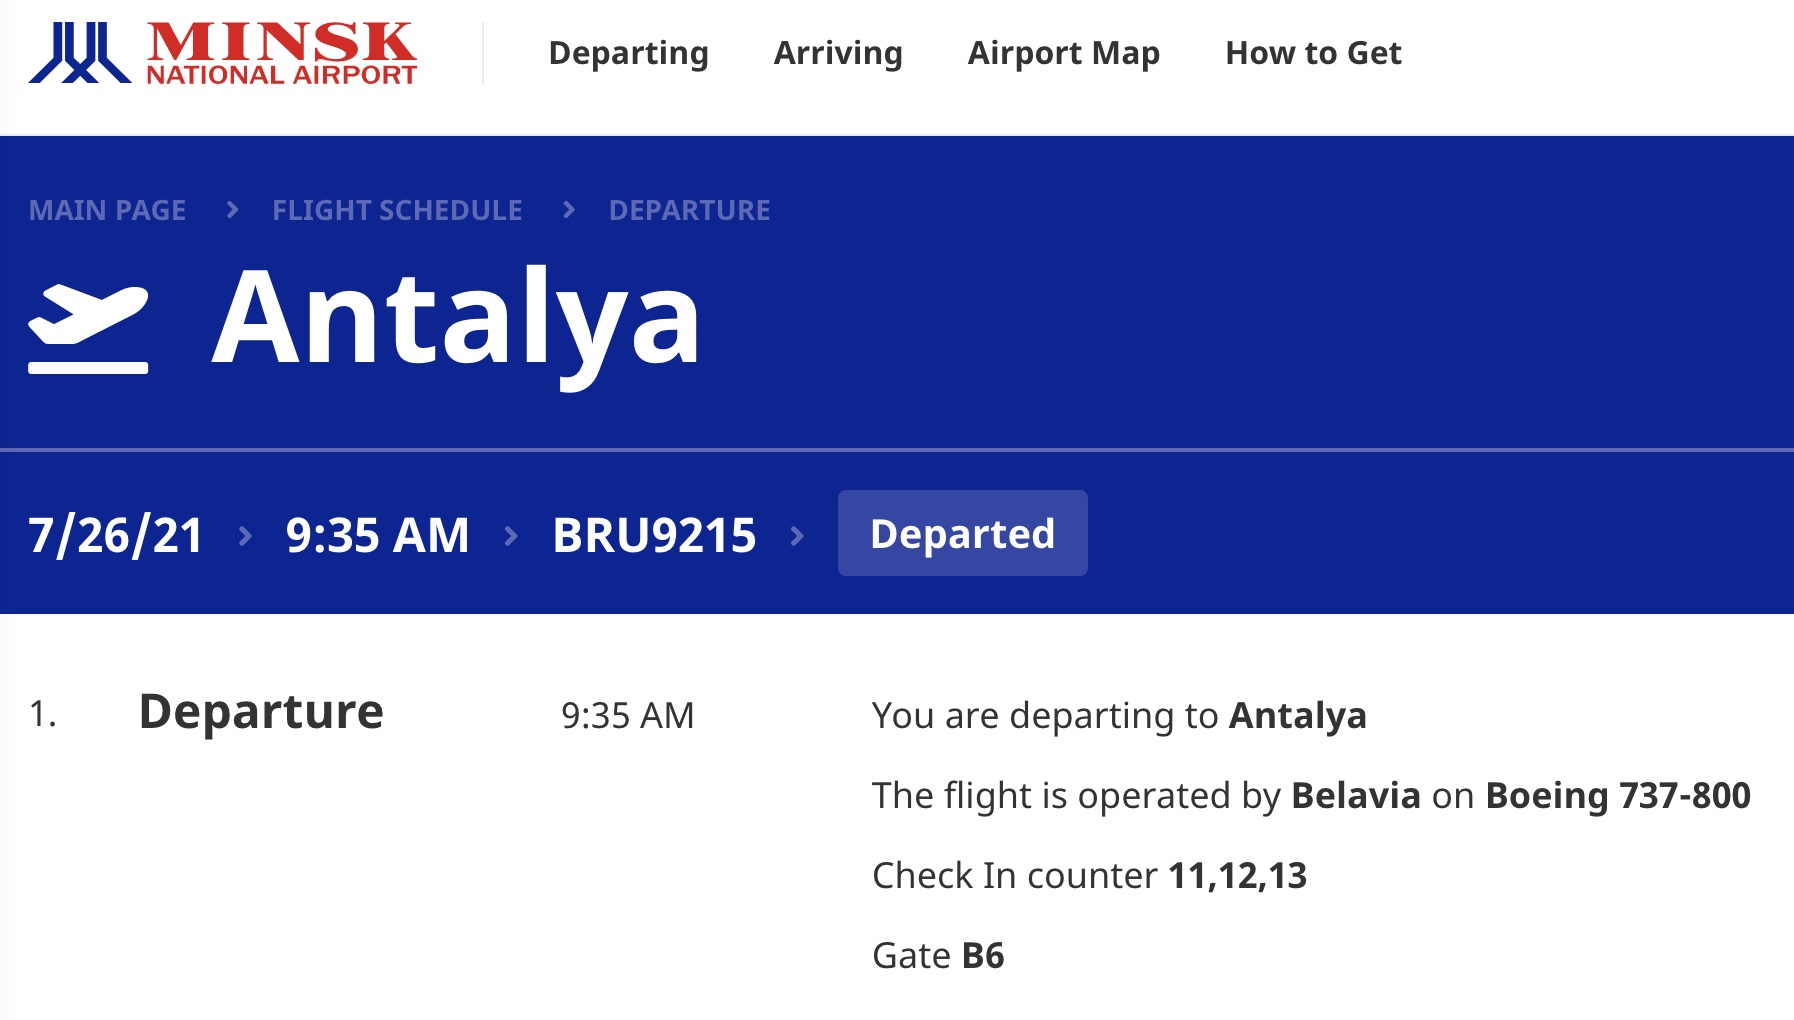 Рейс "Белавиа" из Минска в Анталью изменил курс и подал сигнал бедствия